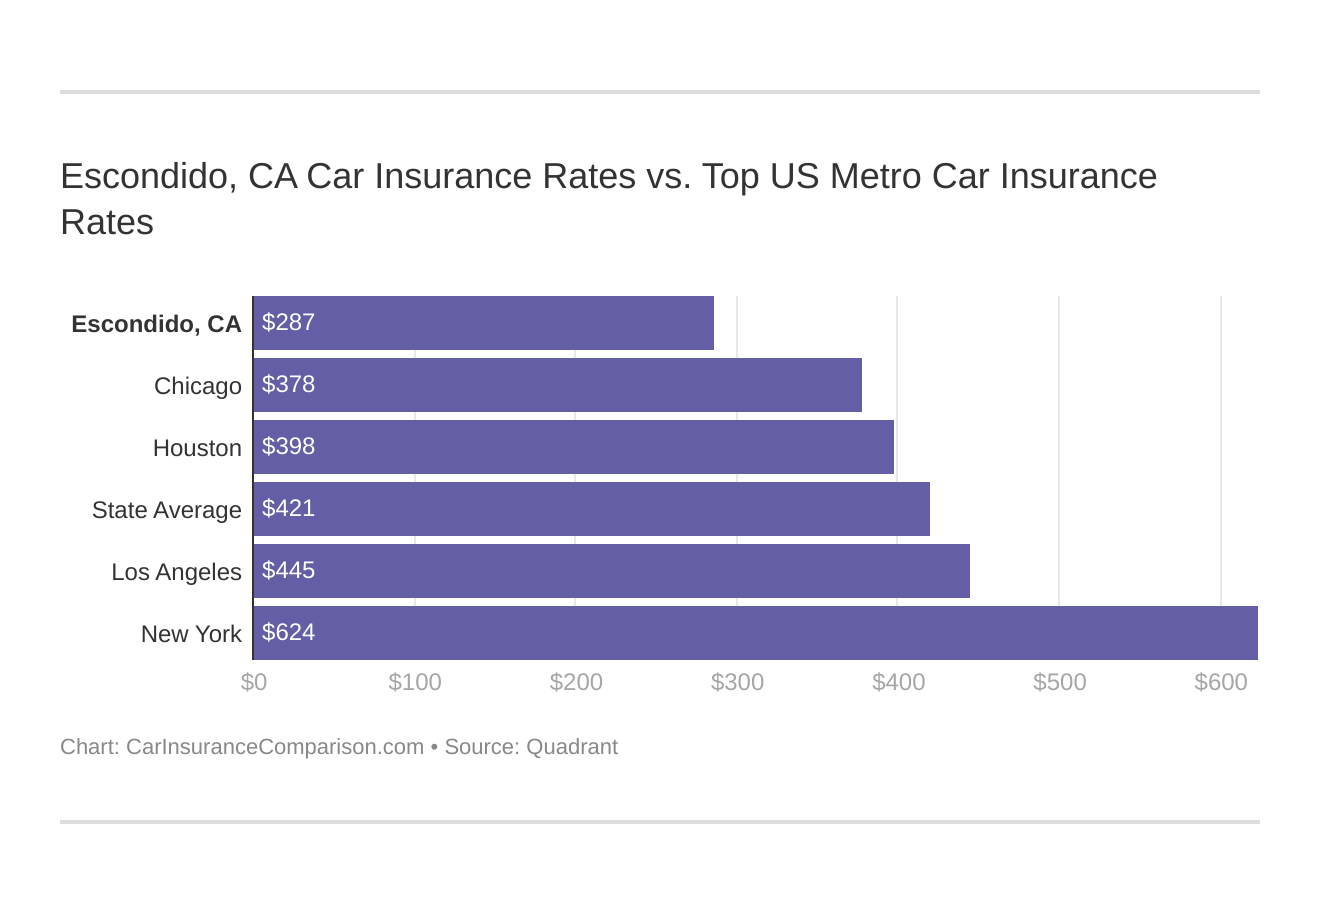 Escondido, CA Car Insurance Rates vs. Top US Metro Car Insurance Rates